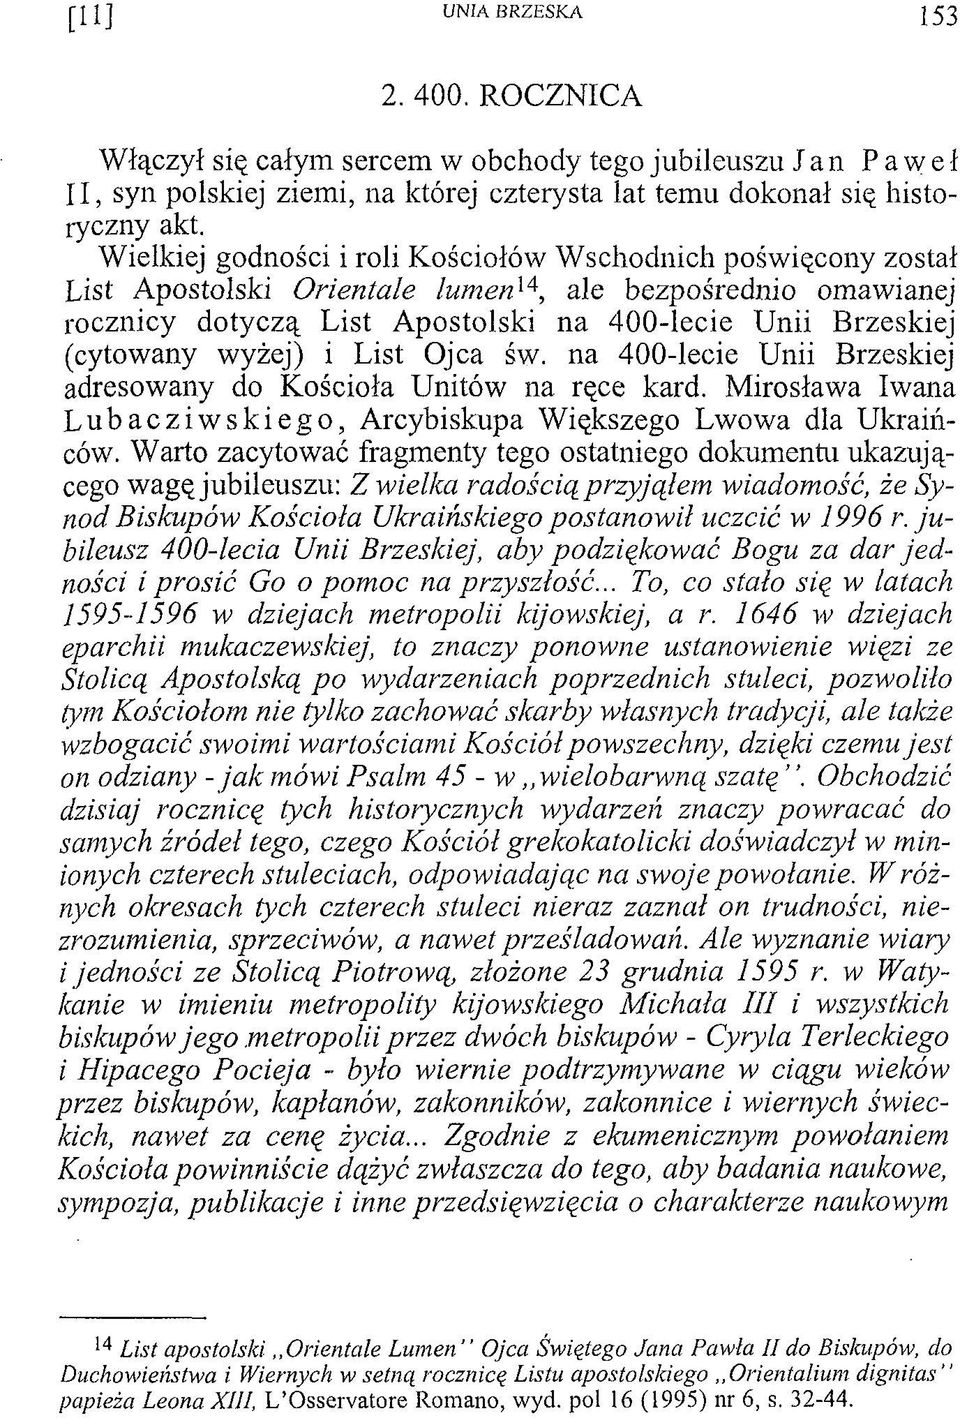 wyżej) i List Ojca św. na 400-lecie Unii Brzeskiej adresowany do Kościoła Unitów na ręce kard. Mirosława Iwana Lubacziwskiego, Arcybiskupa Większego Lwowa dla Ukraińców.